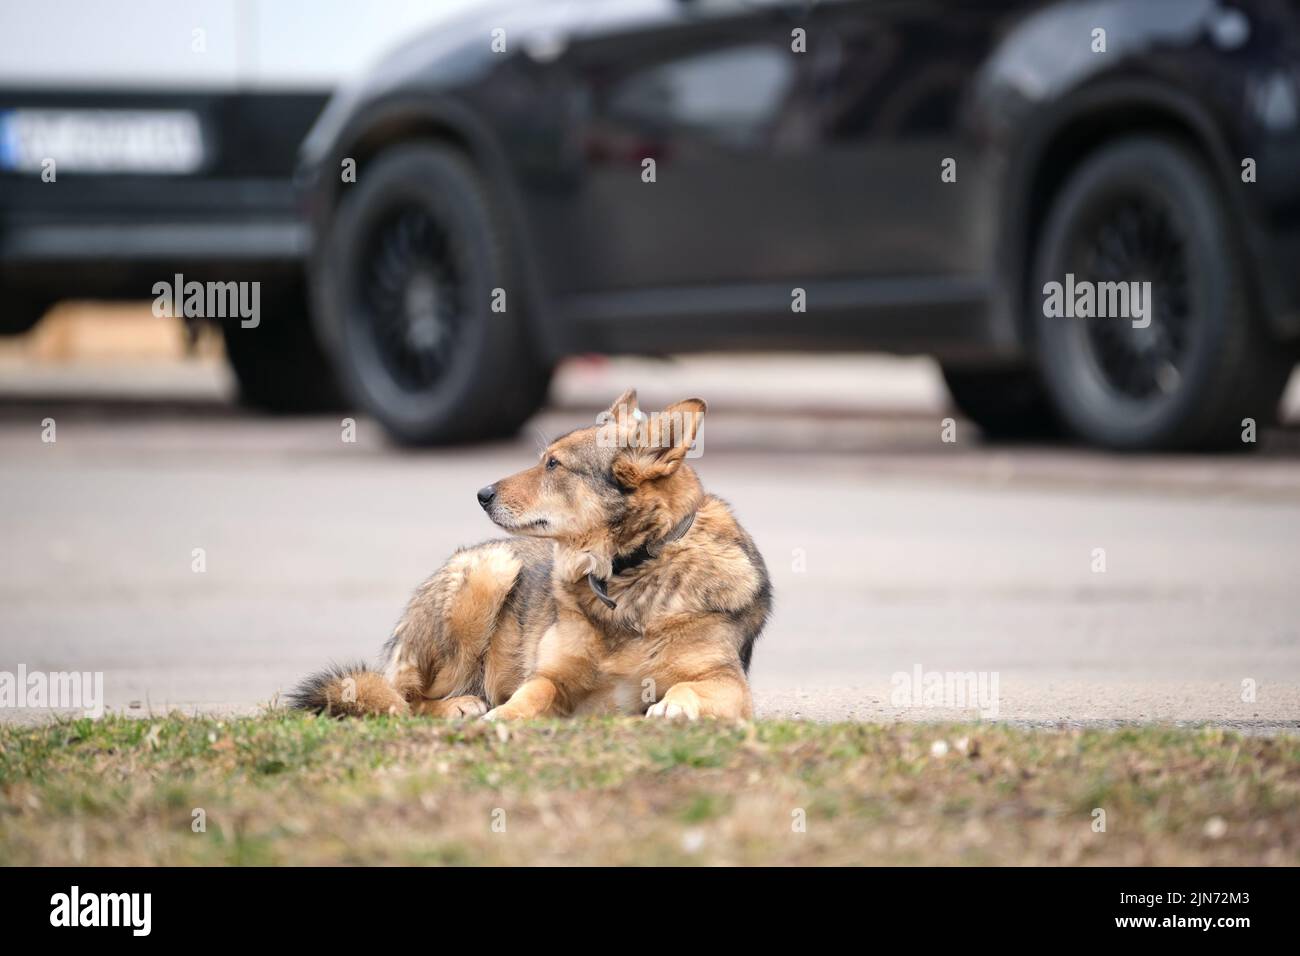 Grand chien blanc et brun posé sur la rue ou la route asphaltée près de la voiture attendant le propriétaire Banque D'Images